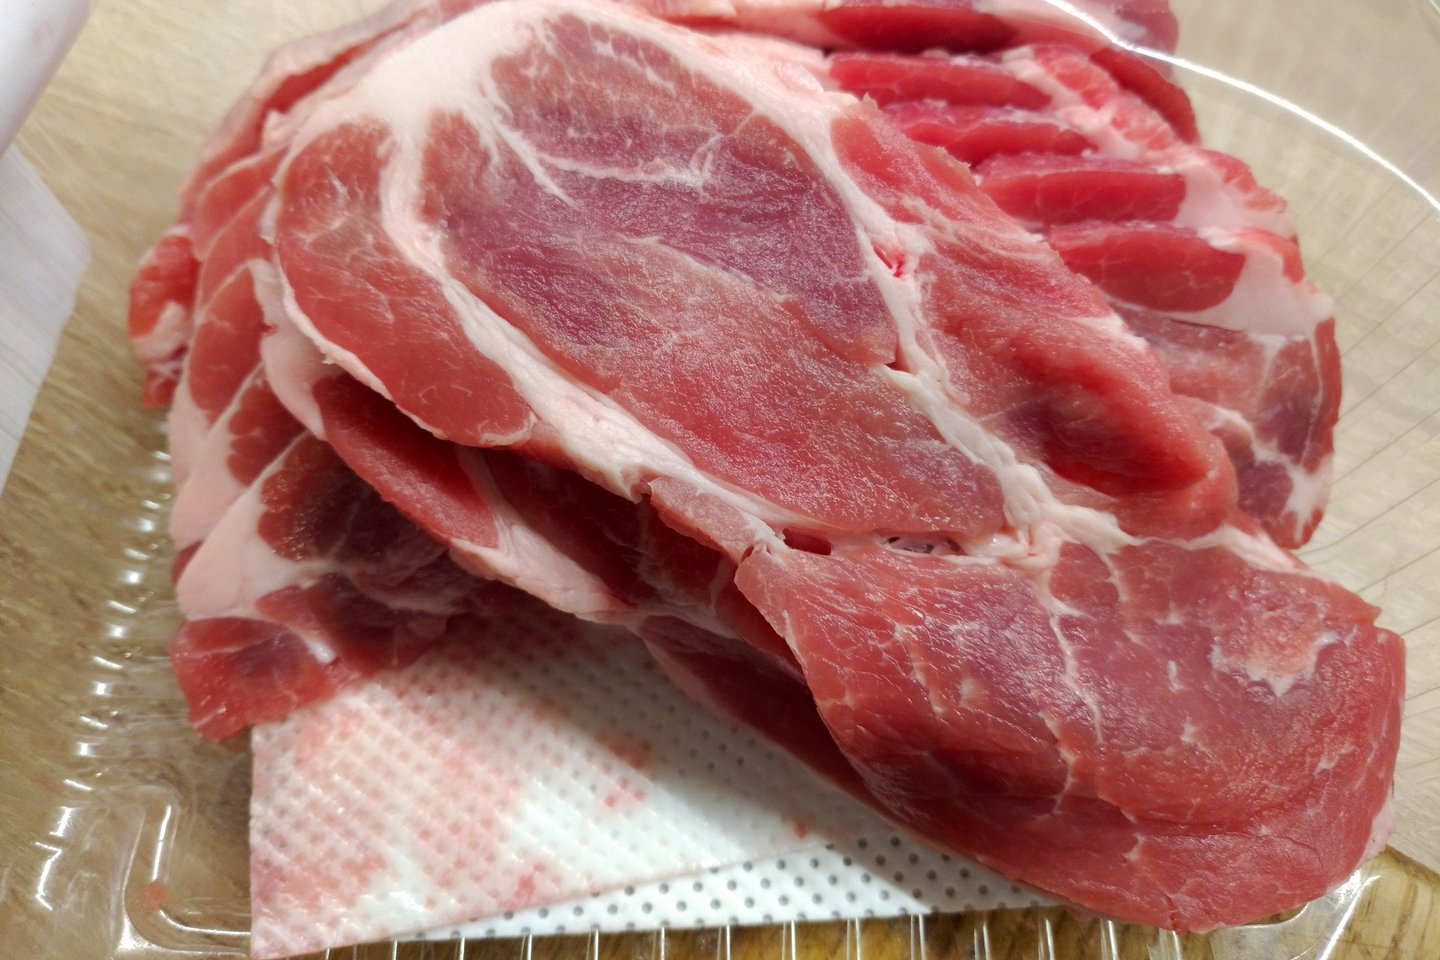  Į dujines mėsos pakuotes klojamos servetėlės skysčiams sugerti. <br> A.Srėbalienės nuotr.